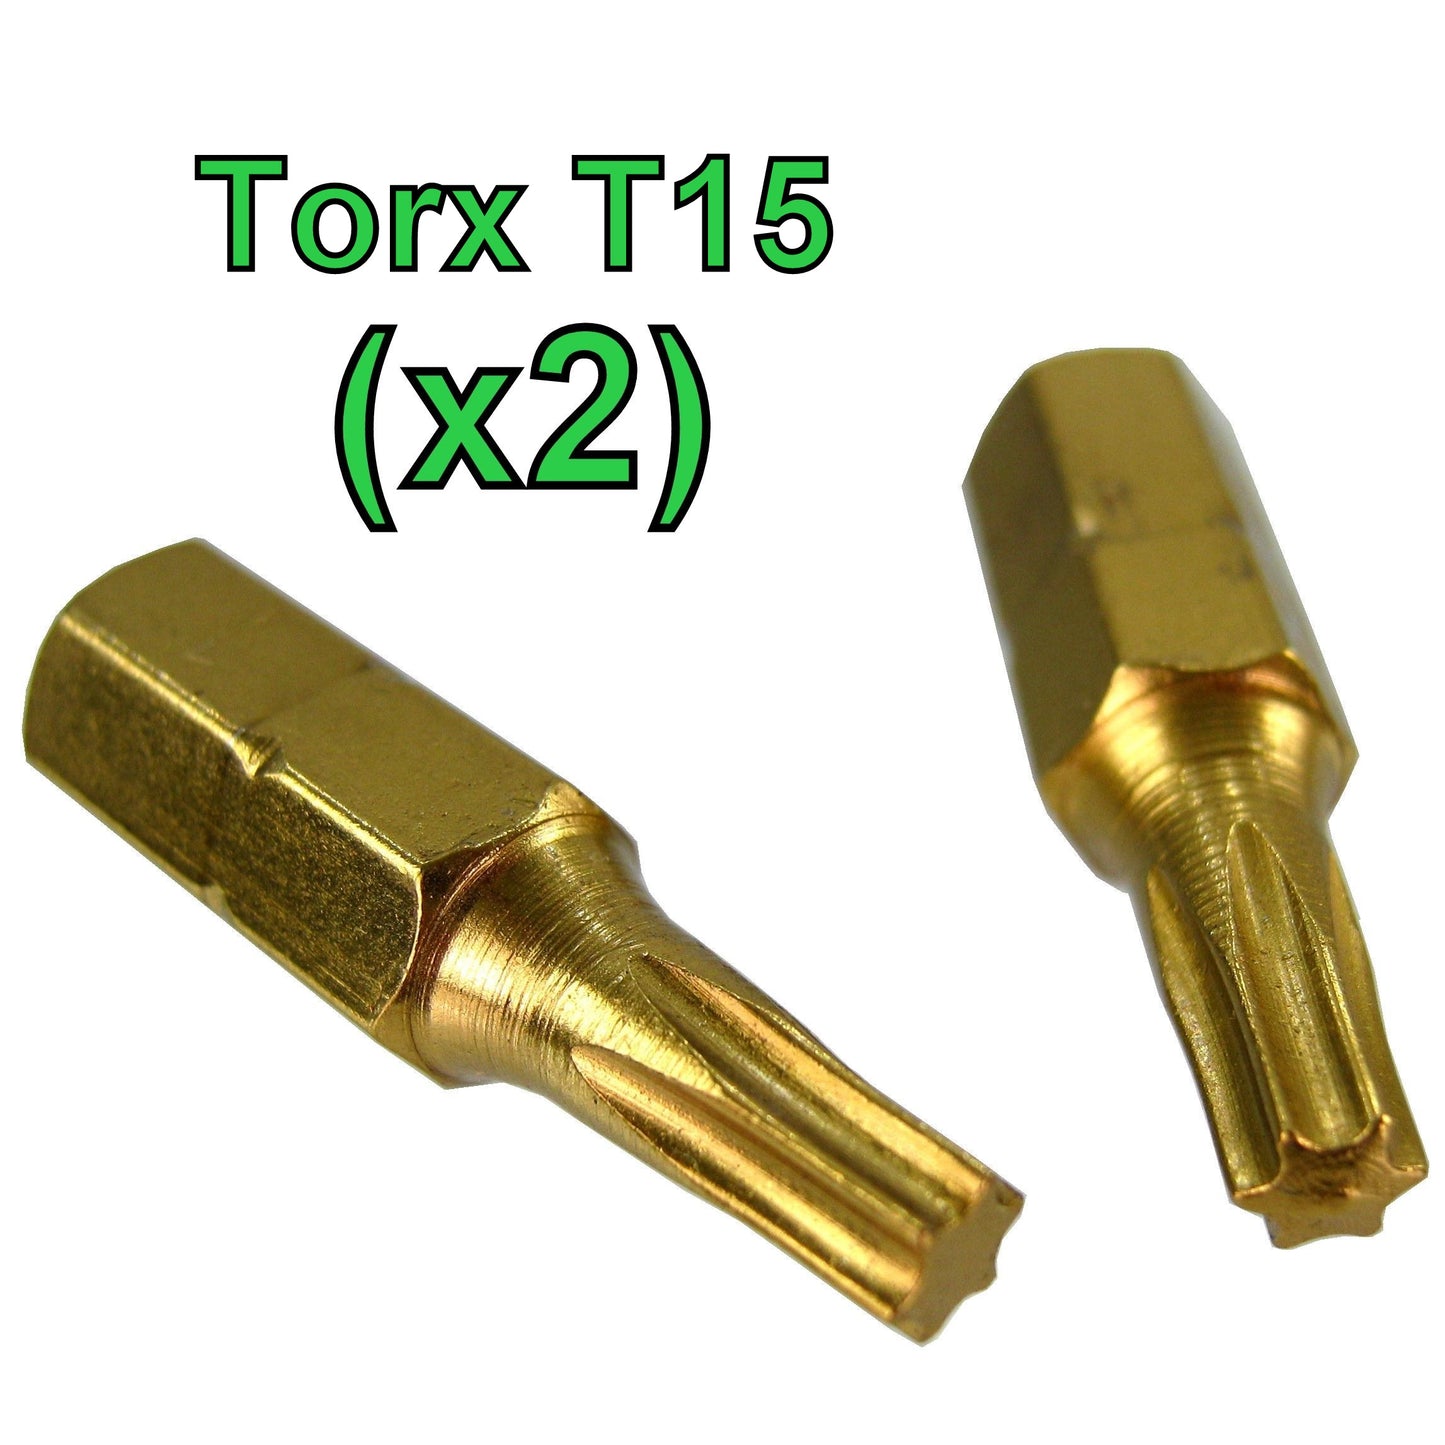 Torx T15 Screwdriver Bit - 2 PK (Standard Type)